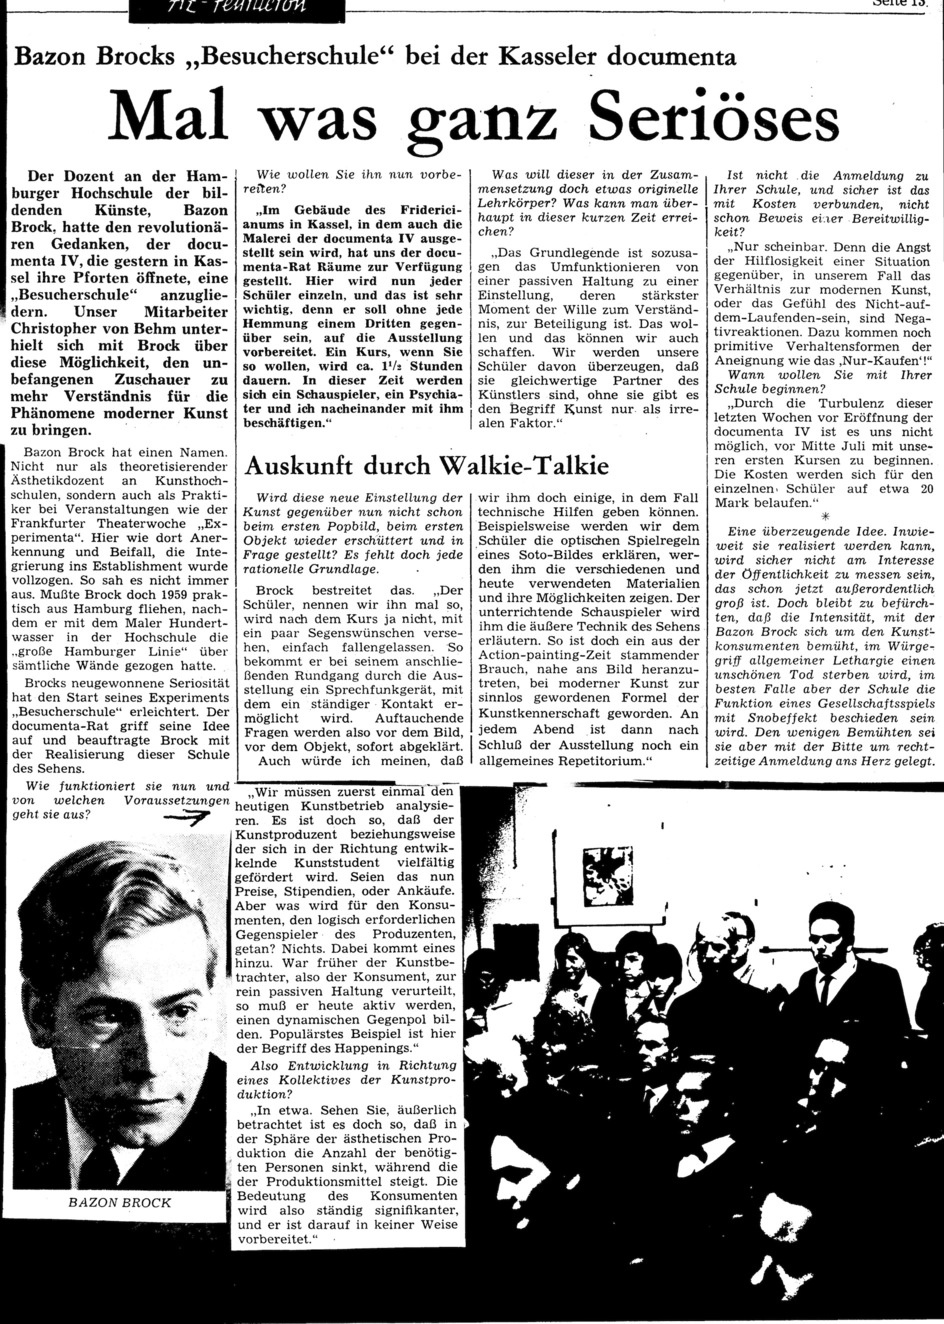 Mal was ganz Seriöses, Bild: Rezension der ersten Besucherschule anläßlich der documenta 4, 1968.